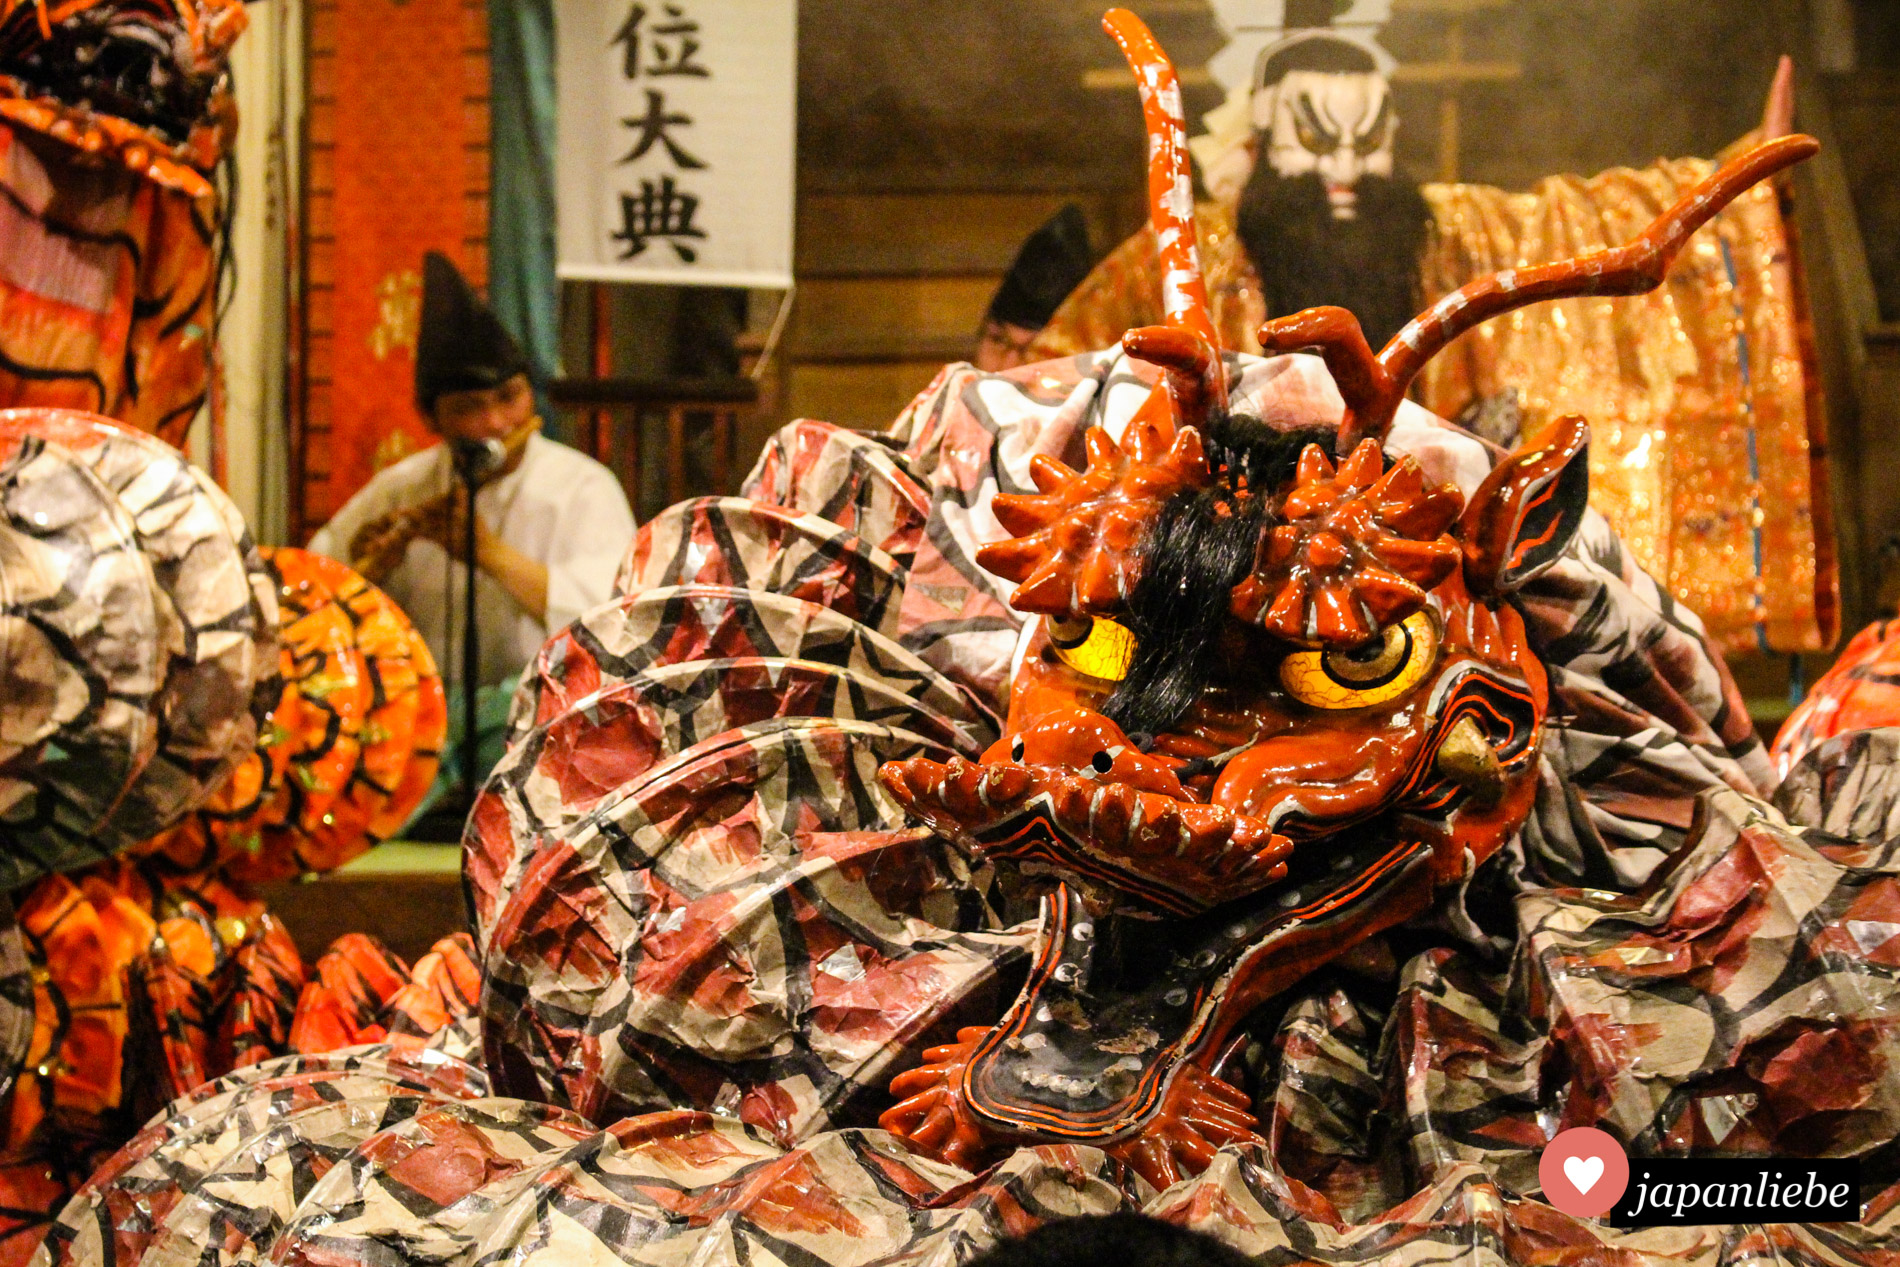 Pompöse Kostüme und schaurige Masken. Das Iwami-kagura-Theater weiß, wie man das Publikum zum Staunen bringt.